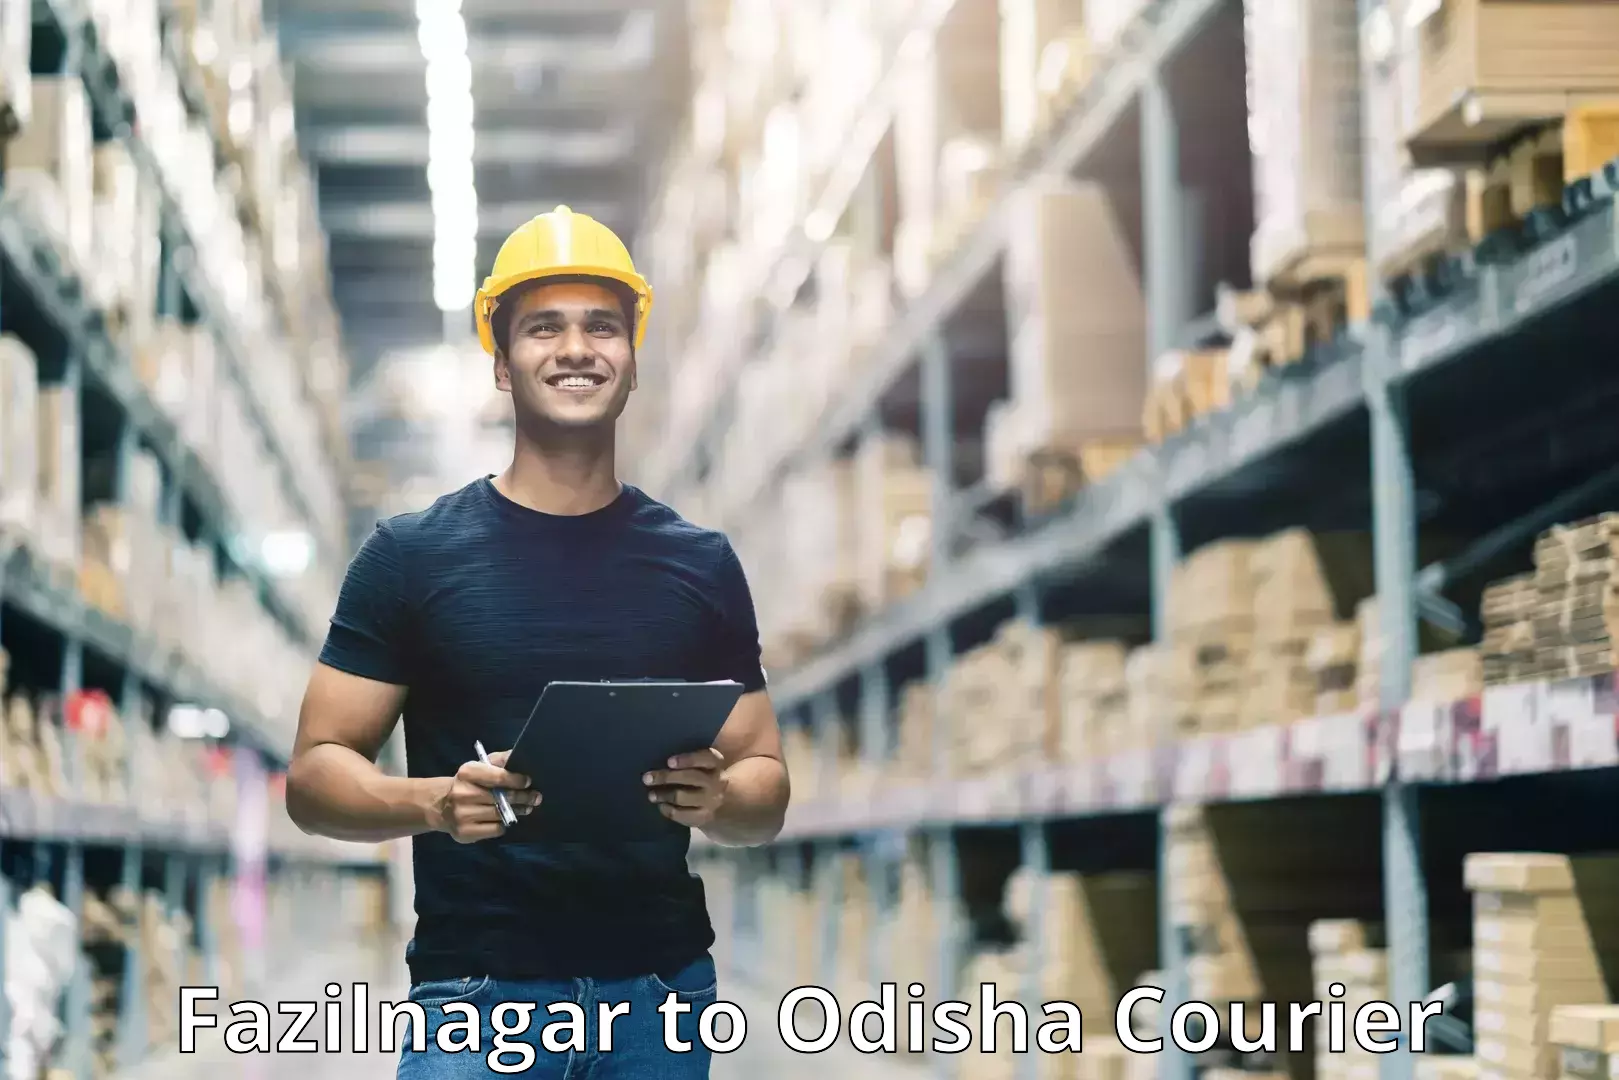 State-of-the-art courier technology Fazilnagar to Bhubaneswar